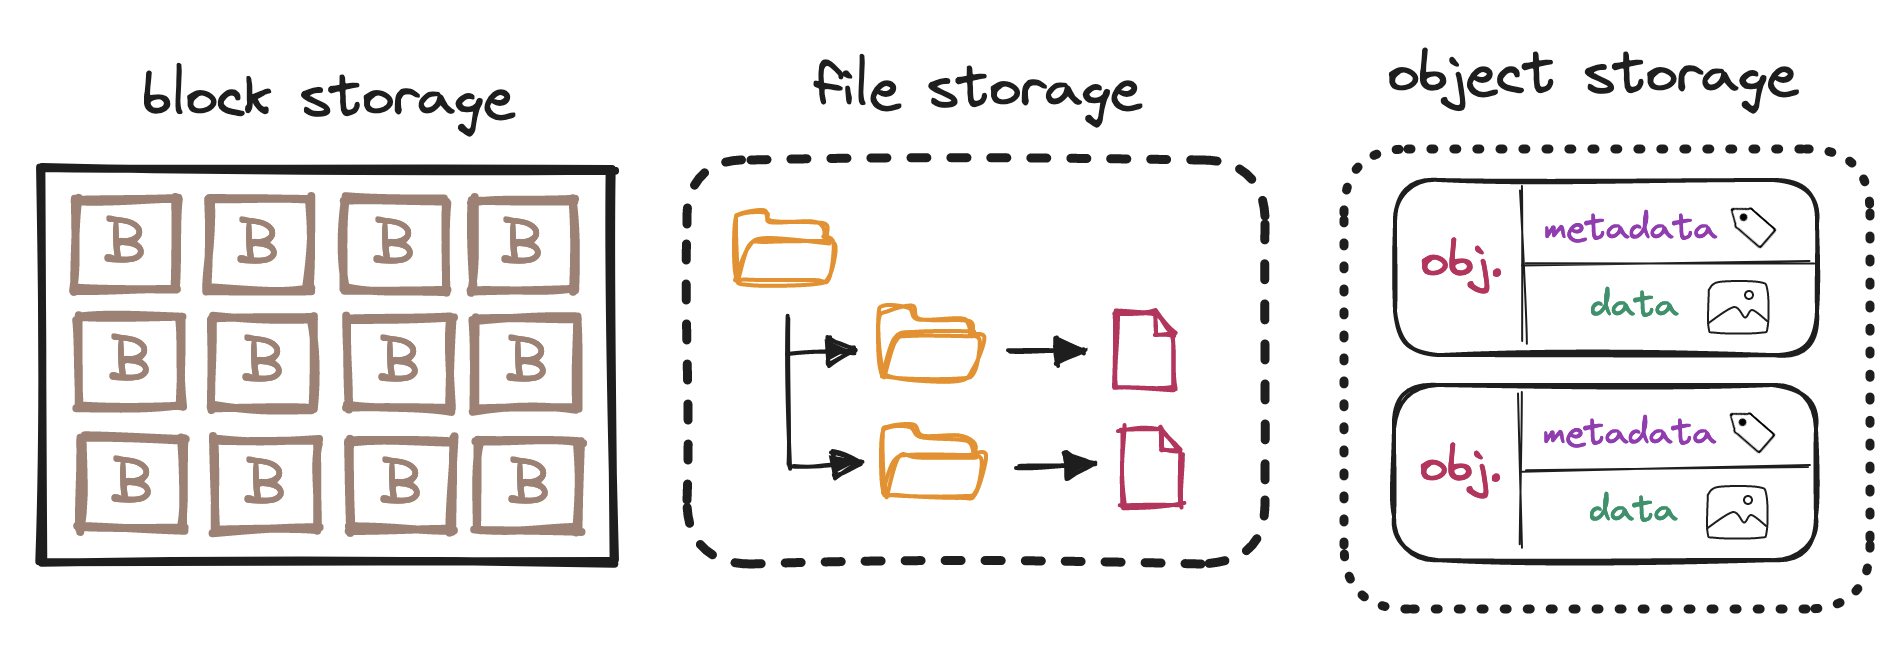 Storage types